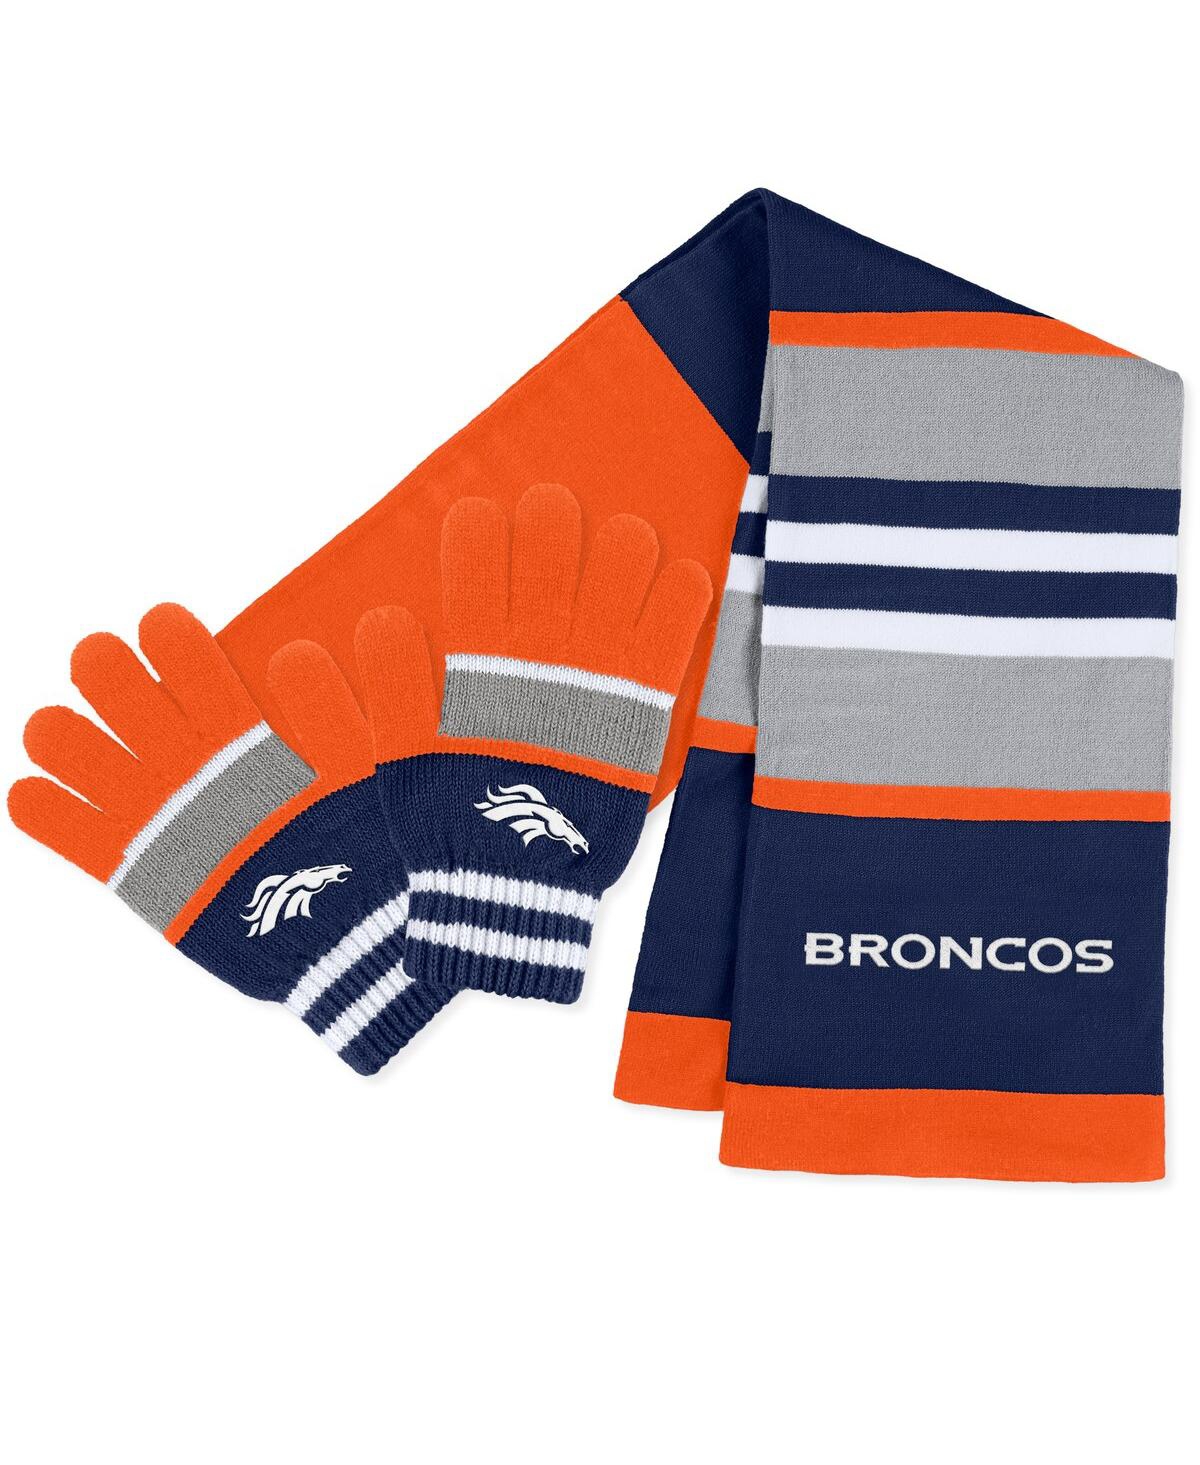 Women's Wear by Erin Andrews Denver Broncos Stripe Glove and Scarf Set - Orange, Navy